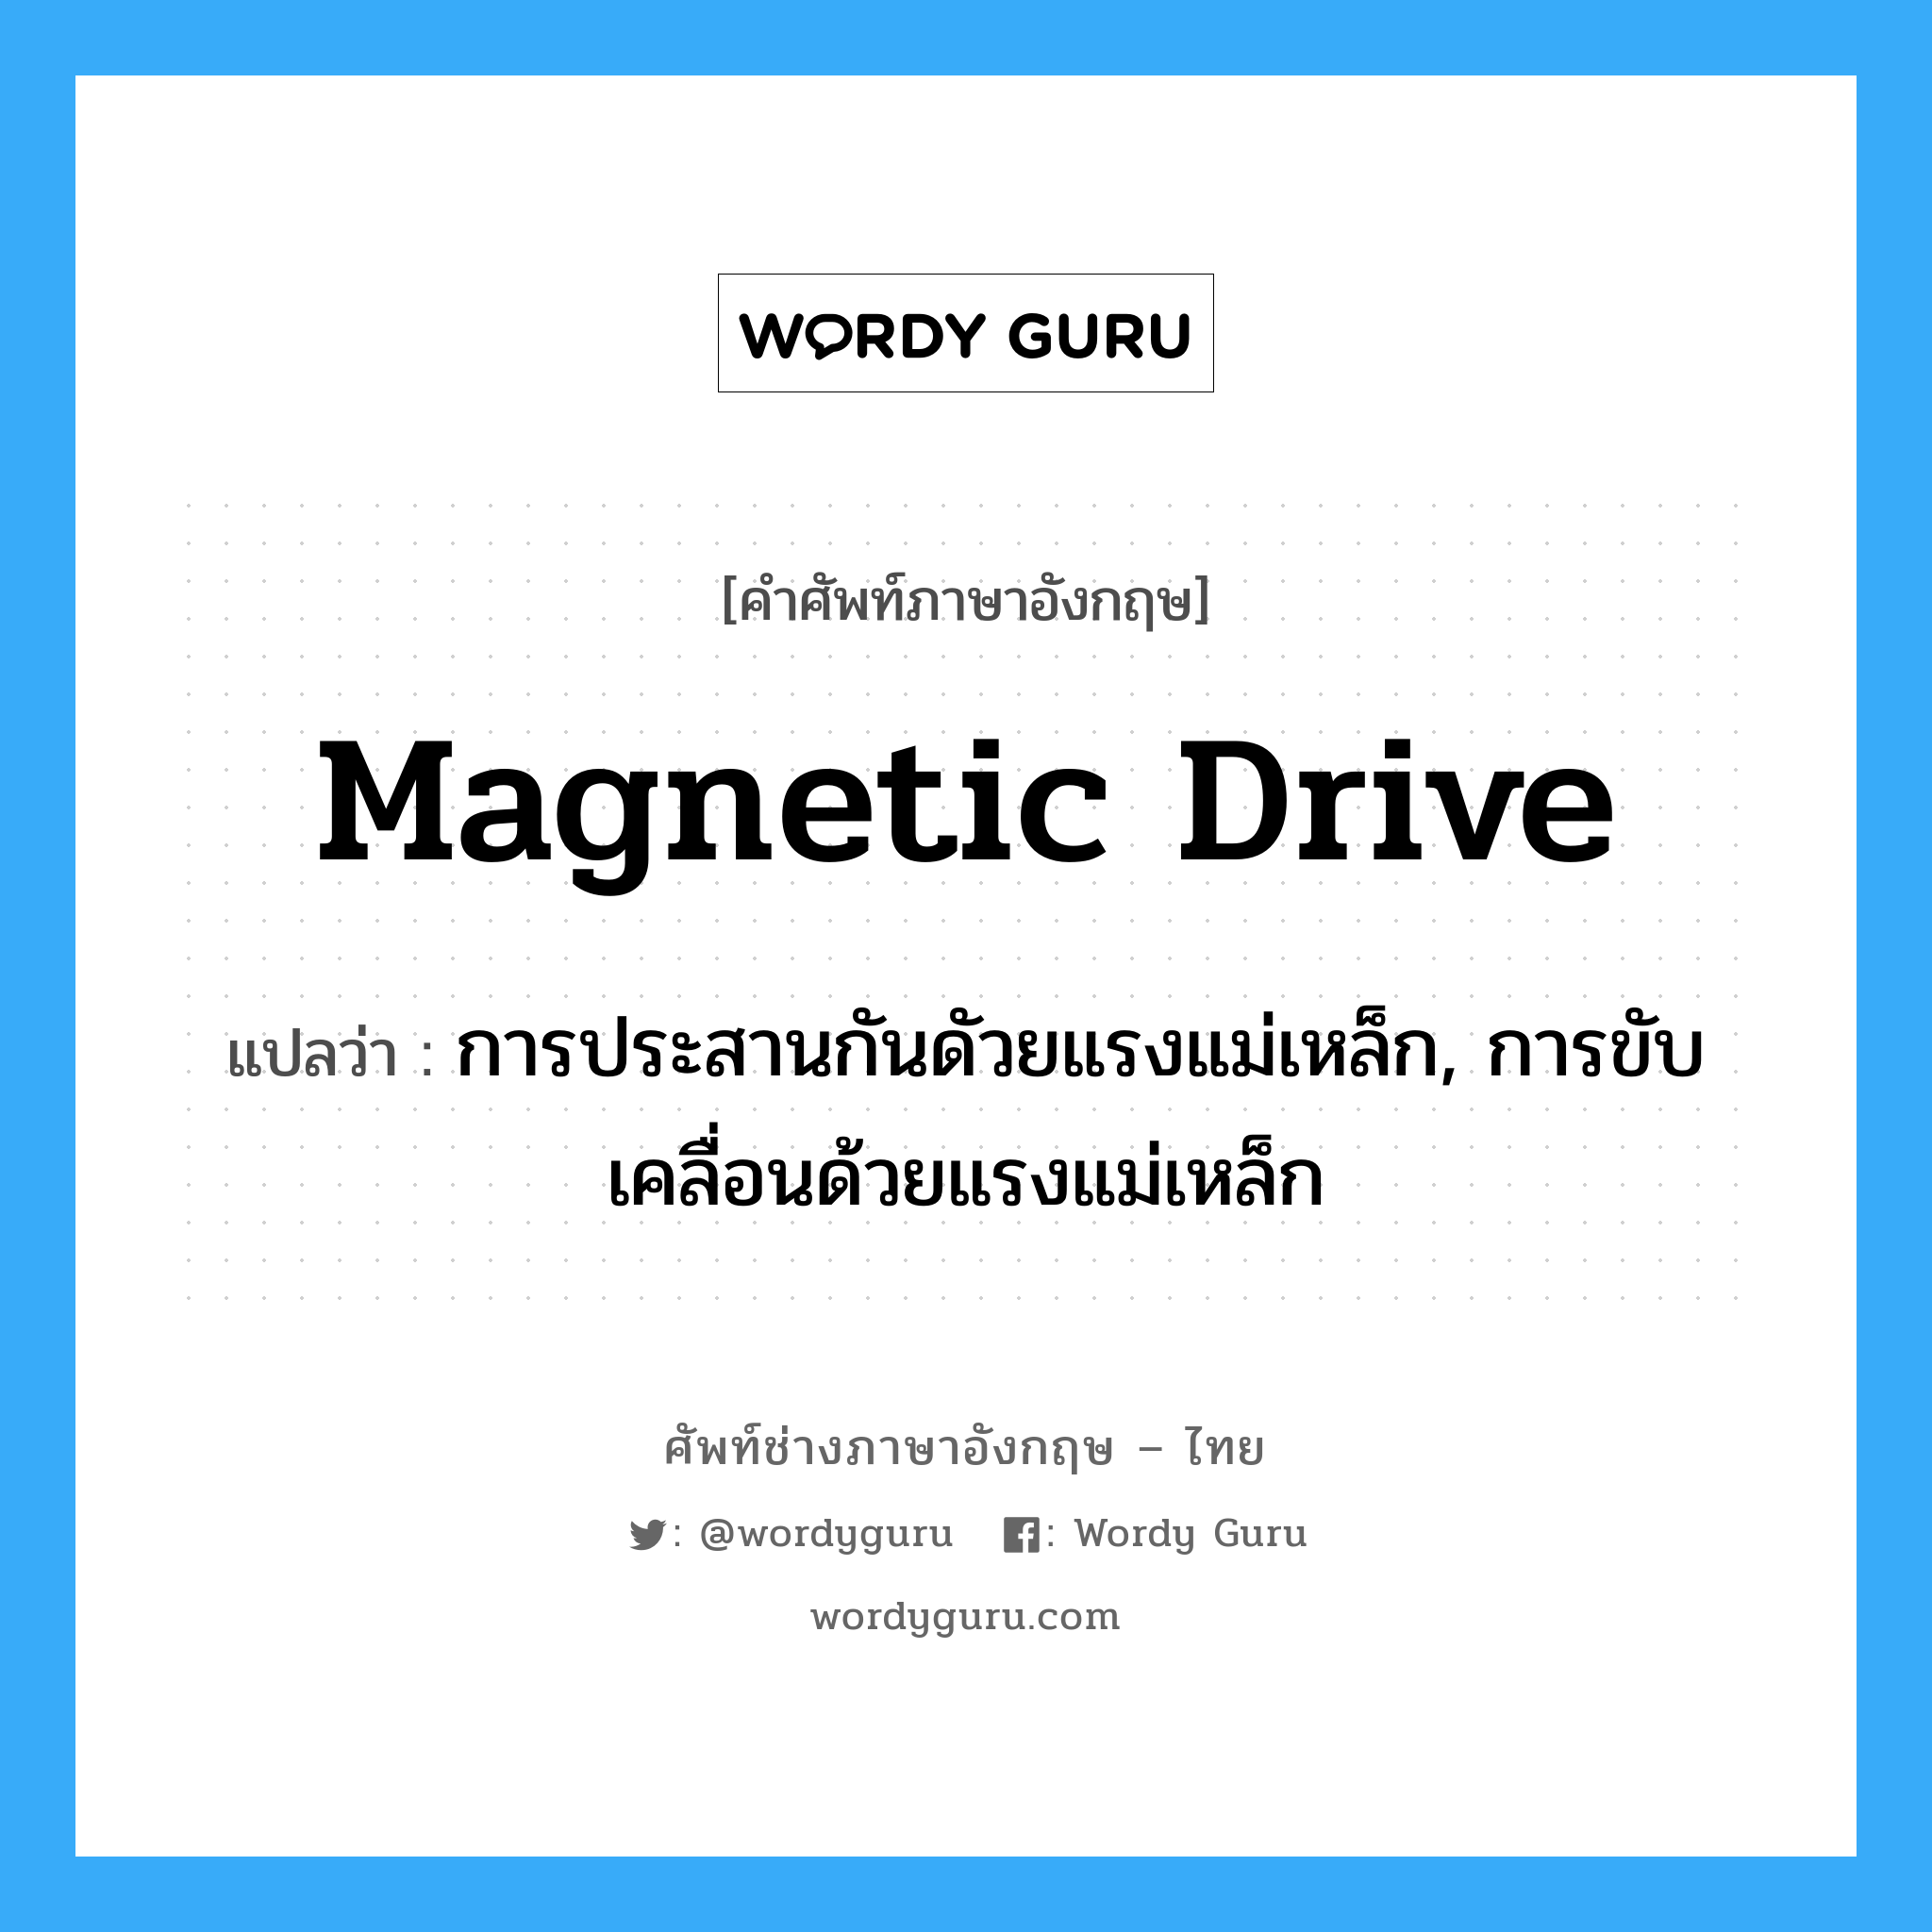 magnetic drive แปลว่า?, คำศัพท์ช่างภาษาอังกฤษ - ไทย magnetic drive คำศัพท์ภาษาอังกฤษ magnetic drive แปลว่า การประสานกันดัวยแรงแม่เหล็ก, การขับเคลื่อนด้วยแรงแม่เหล็ก